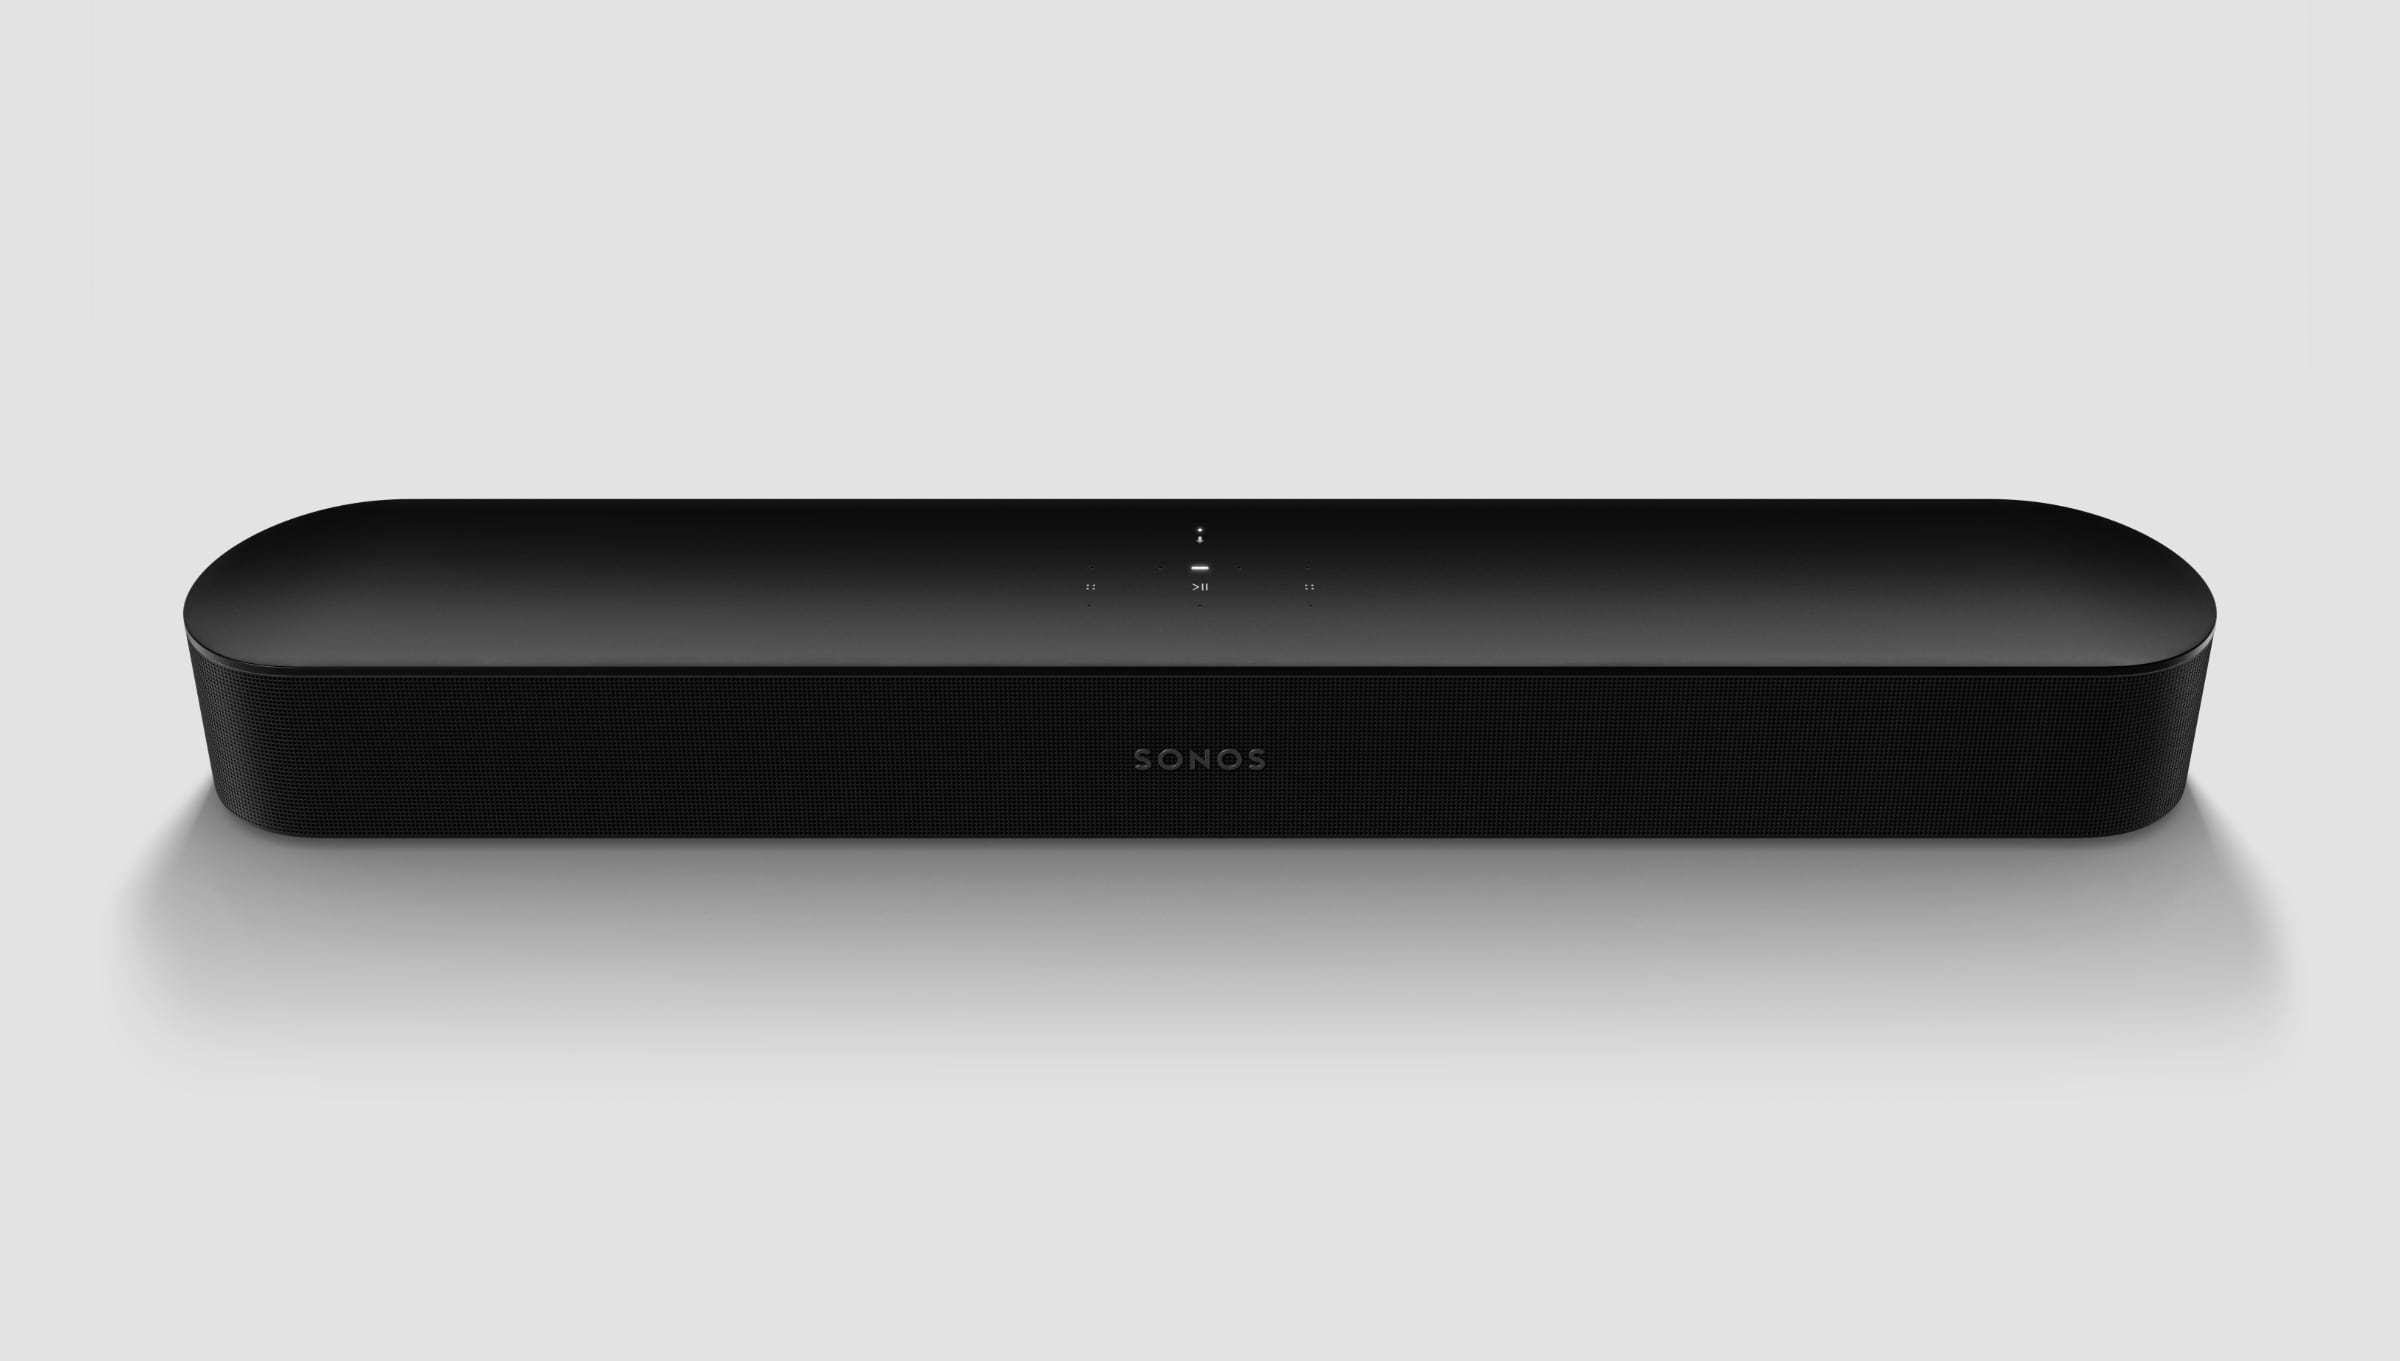 Sonos lancerer Beam (Gen 2) med Dolby Atmos & eARC - FlatpanelsDK